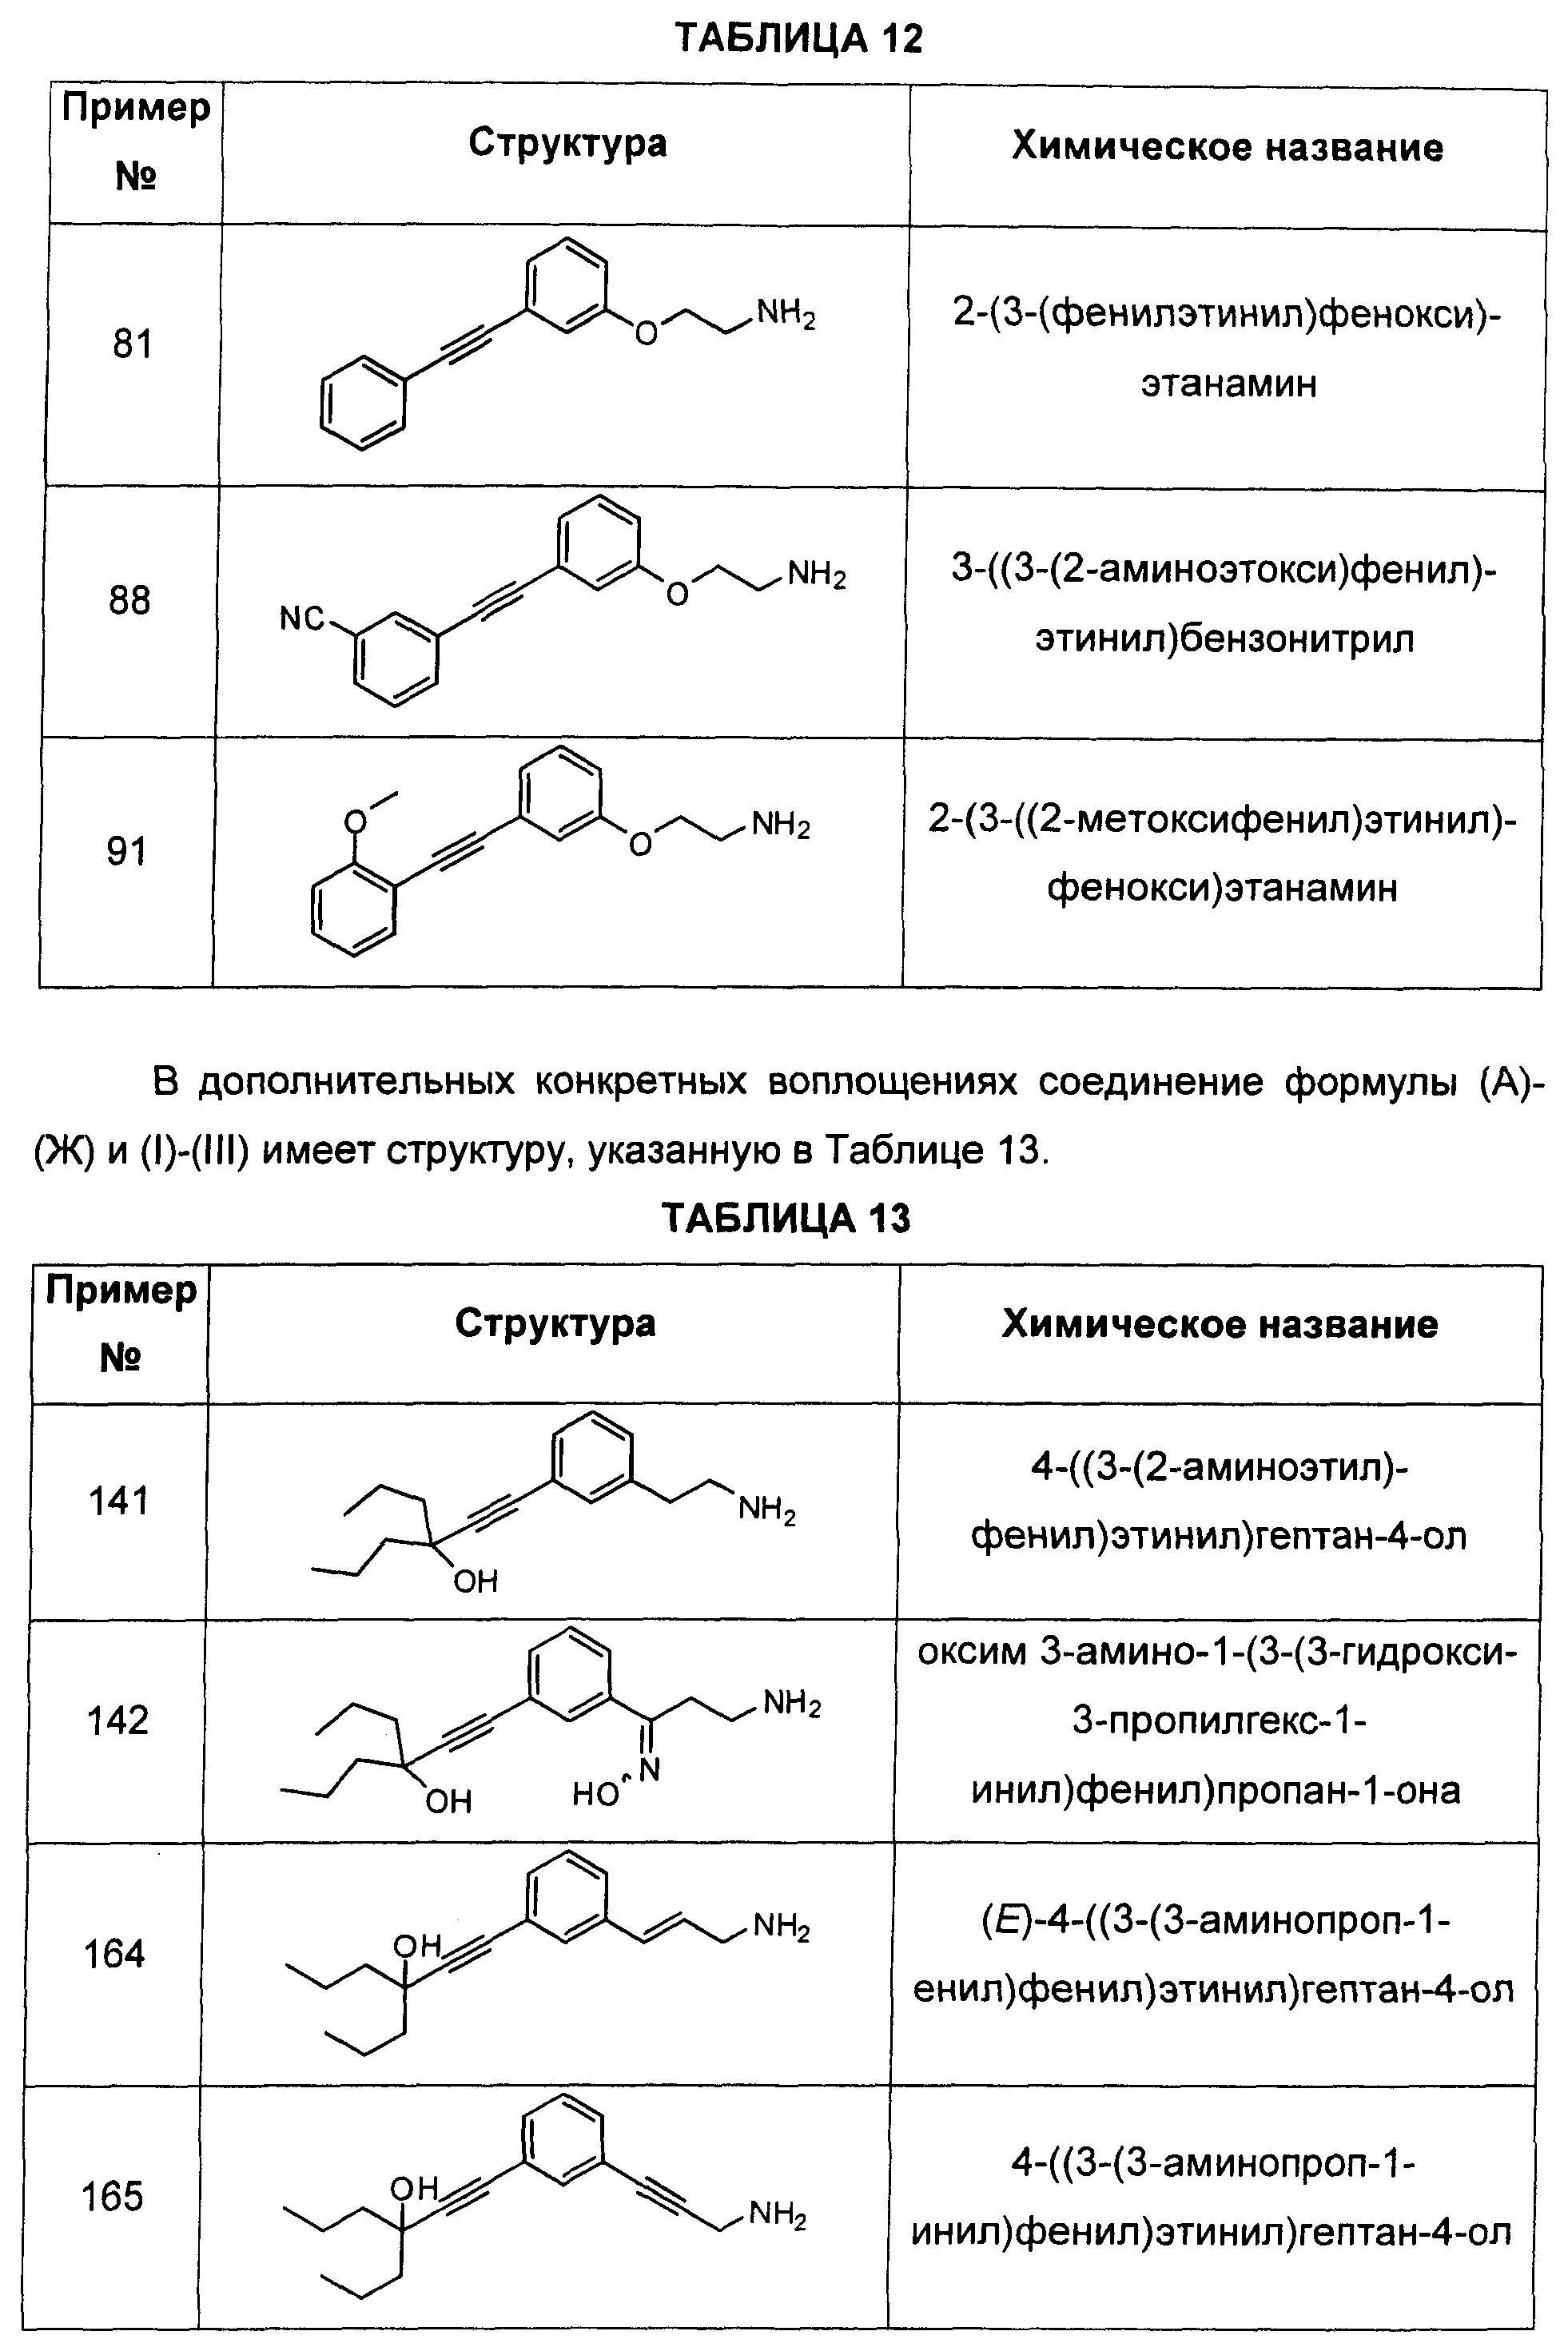 Этанамин. 2 Феноксиэтанамин. Дайте название представленным соединениям. Сколько соединений представлено